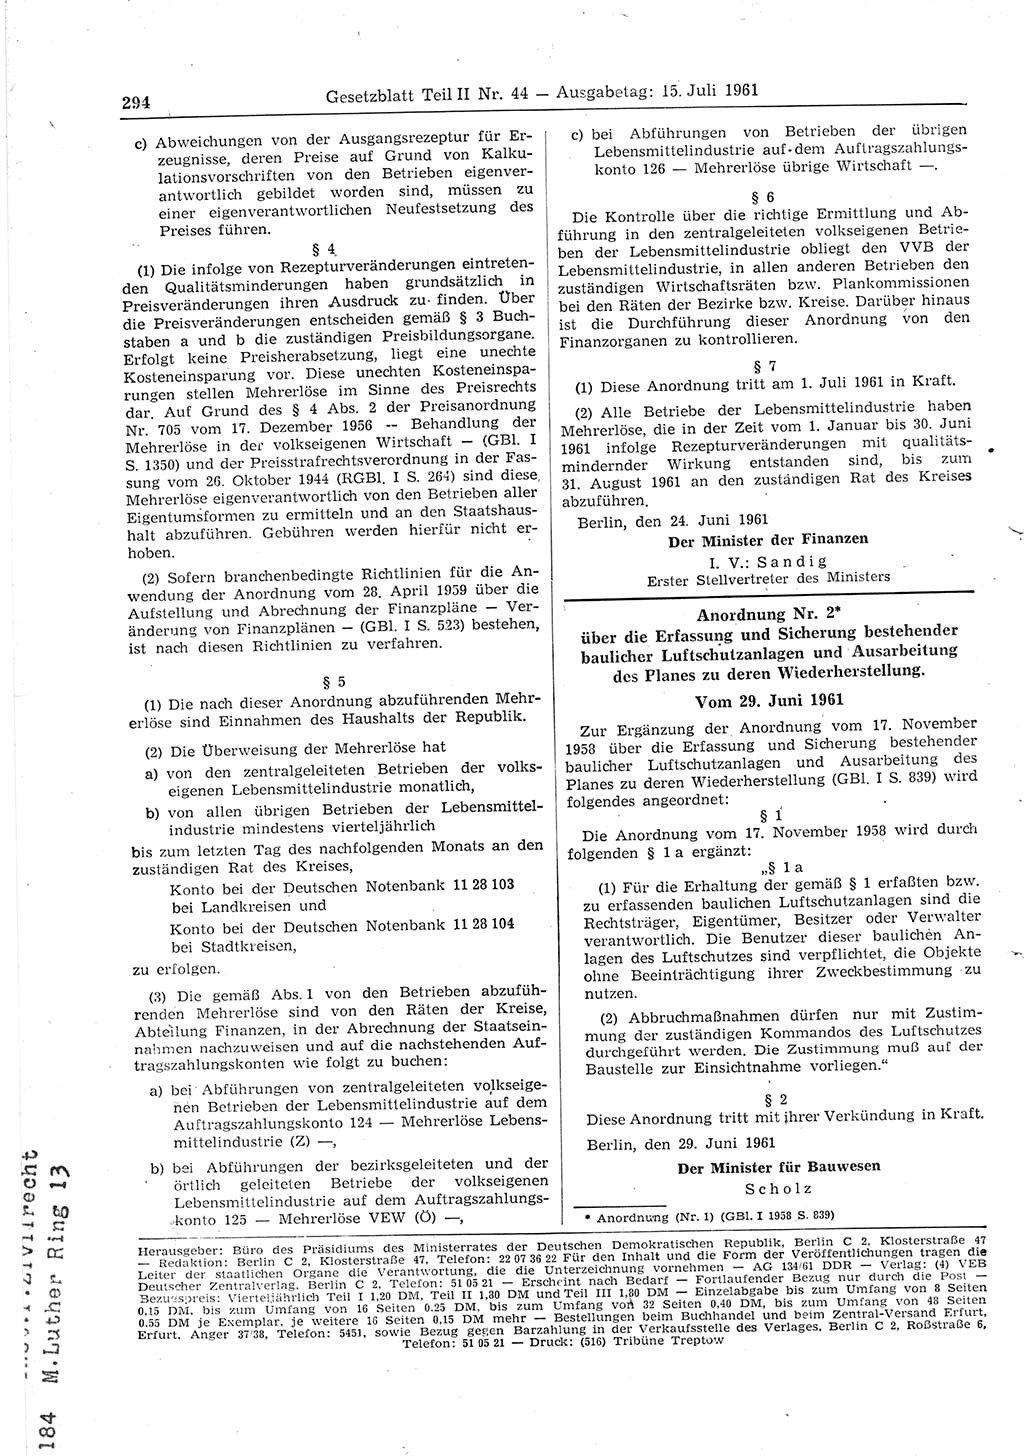 Gesetzblatt (GBl.) der Deutschen Demokratischen Republik (DDR) Teil ⅠⅠ 1961, Seite 294 (GBl. DDR ⅠⅠ 1961, S. 294)